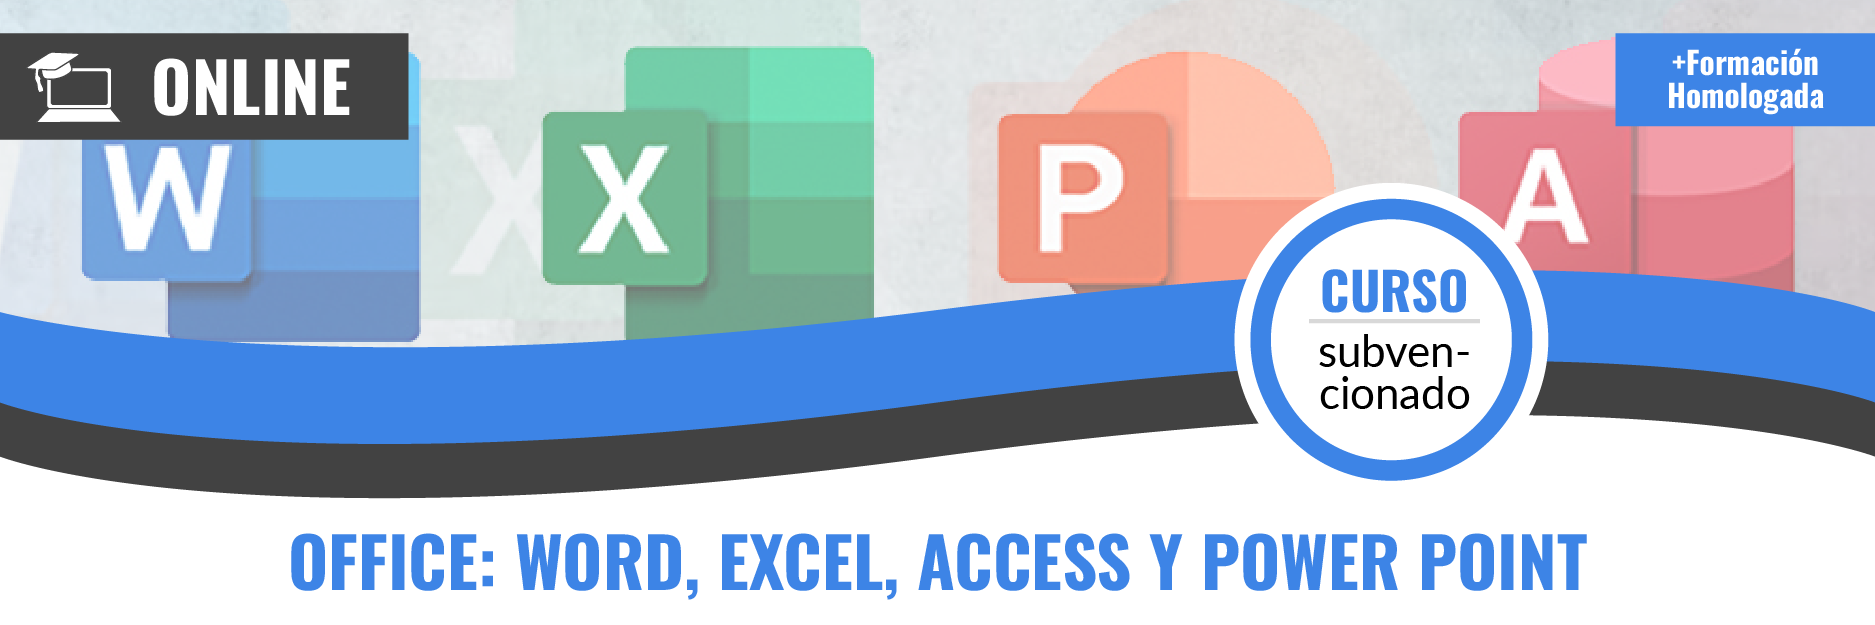 Curso gratis de ADGG052PO Office: Word, Excel, Access y Power Point teleformación